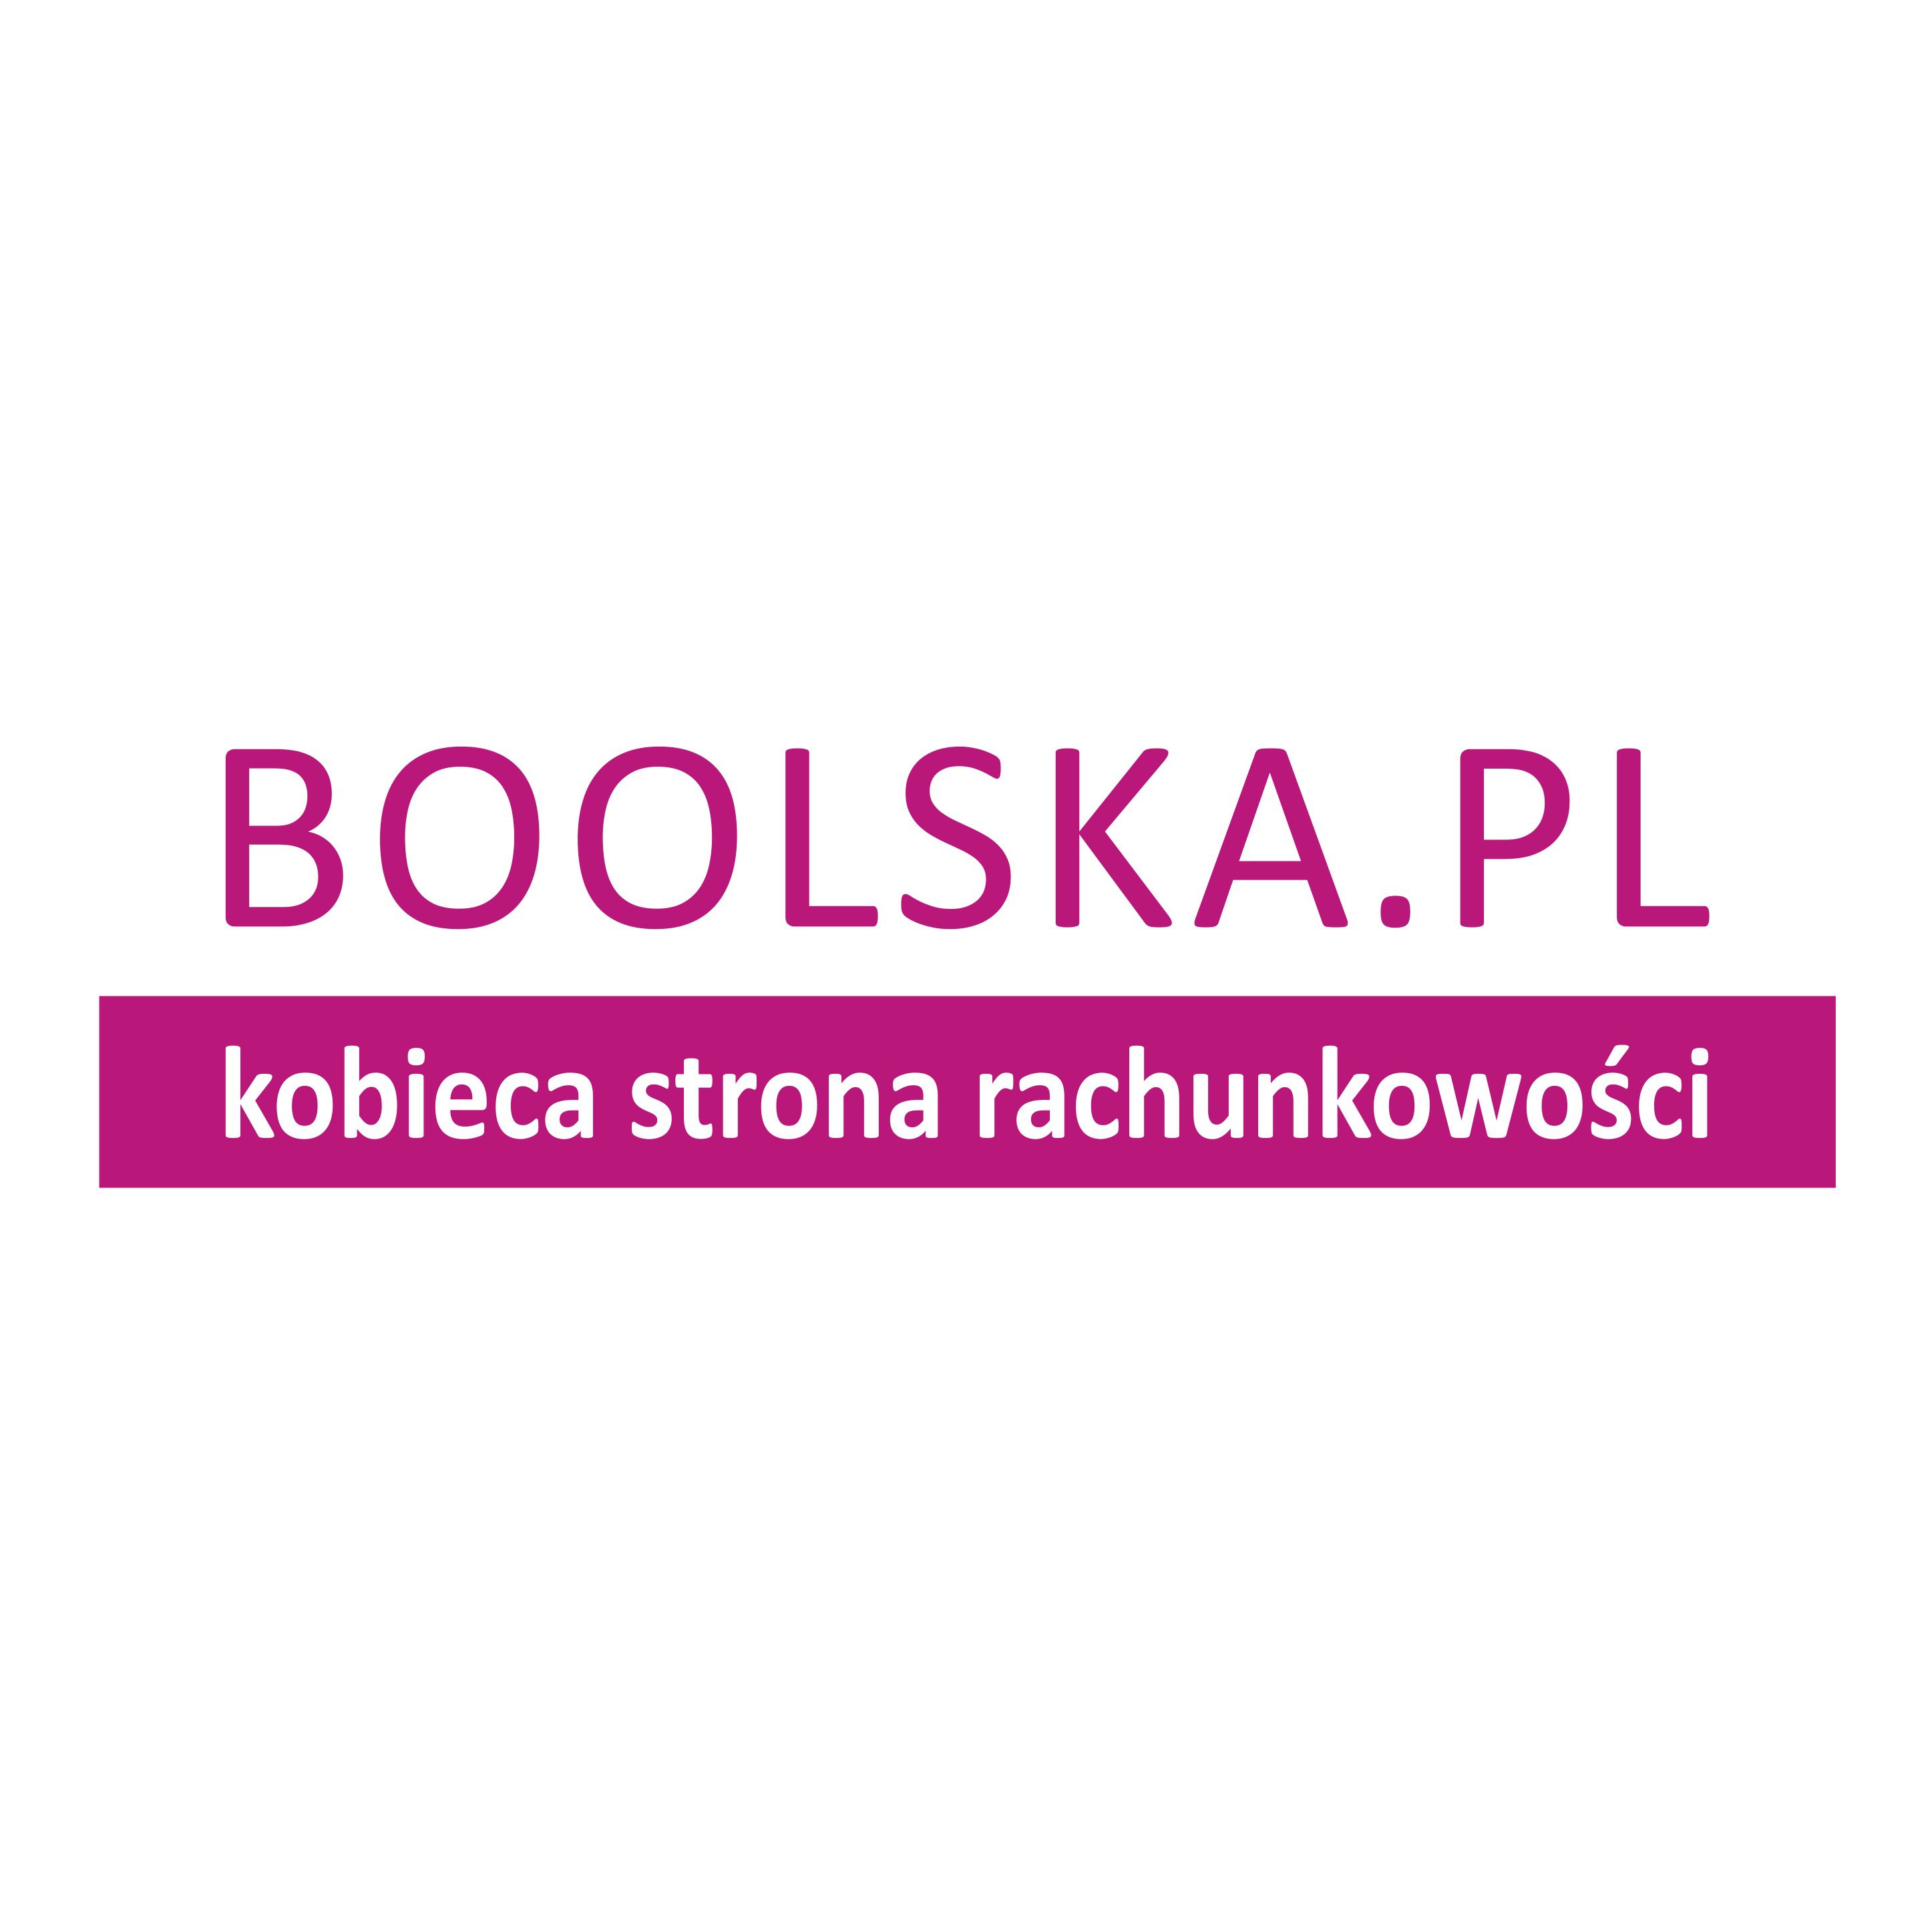 boolskapl_logotyp